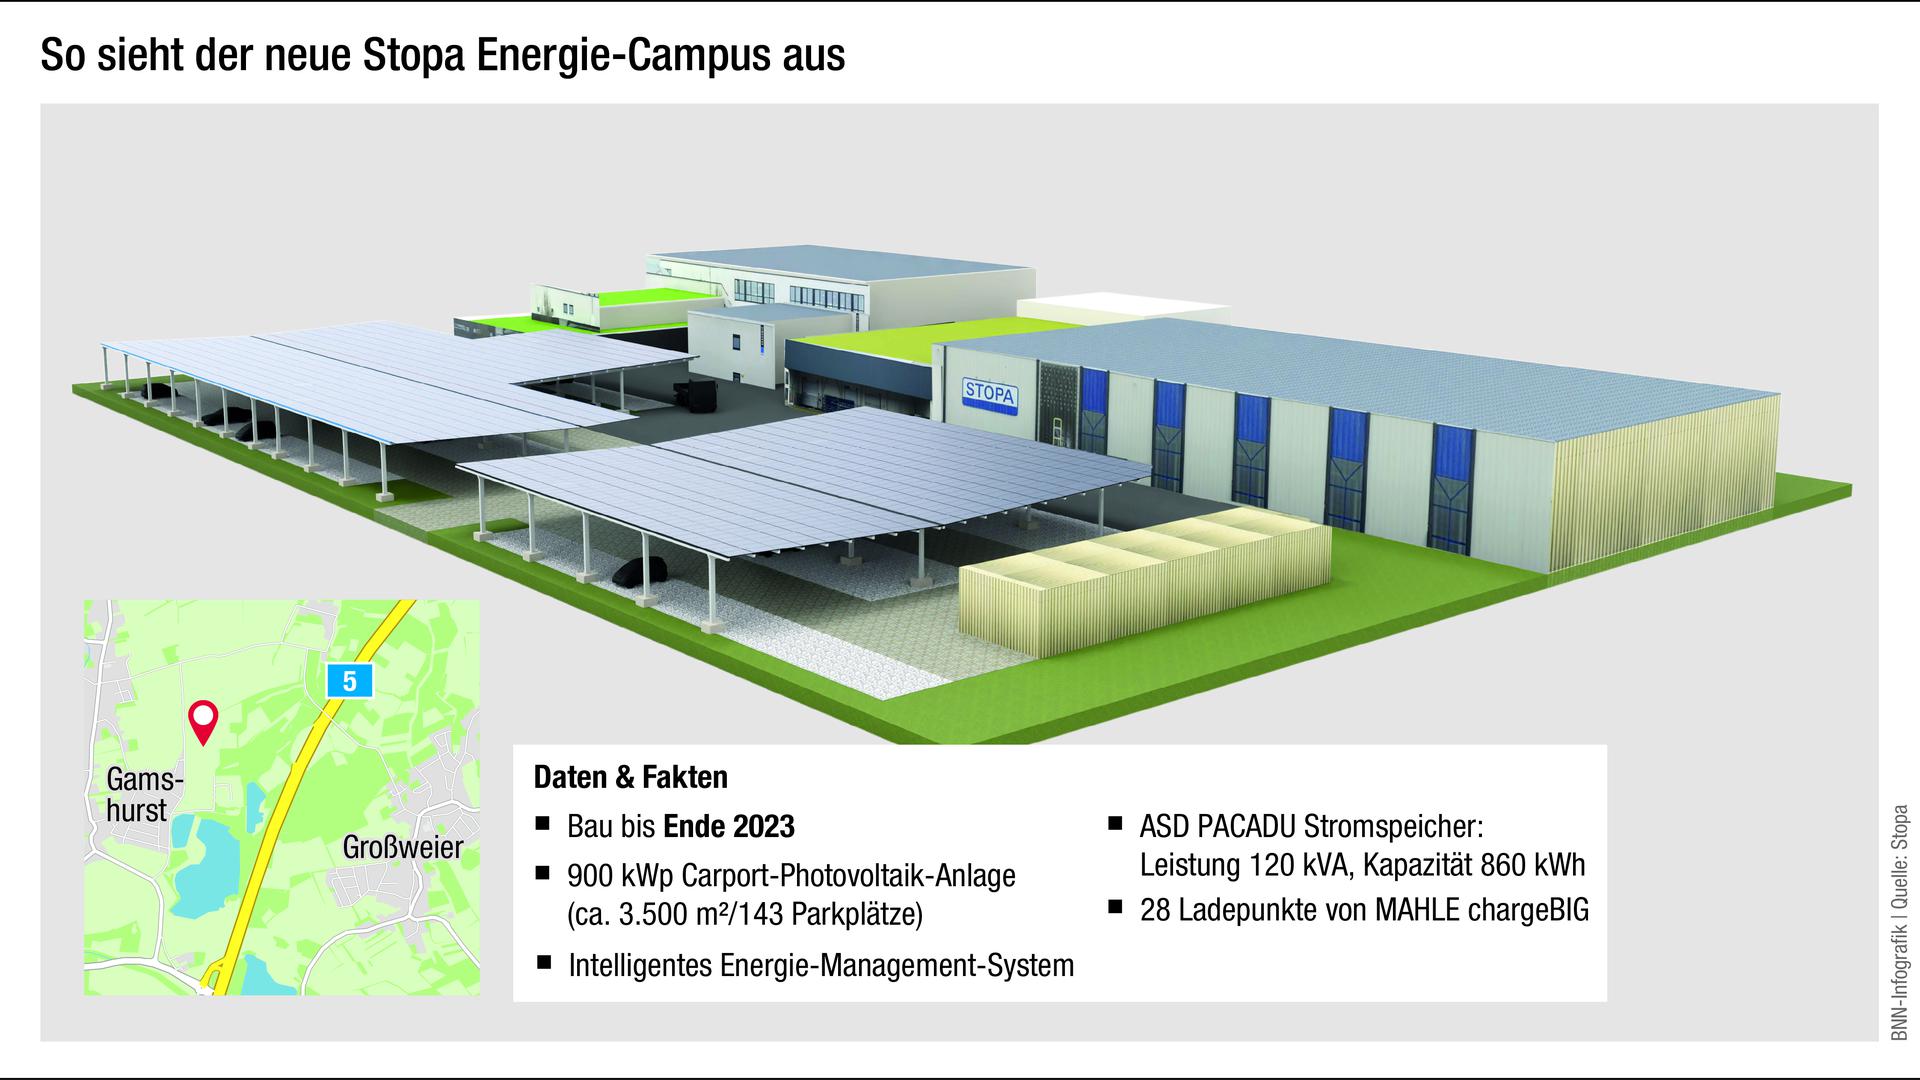 So sieht der neue Stopa Energie-Campus aus